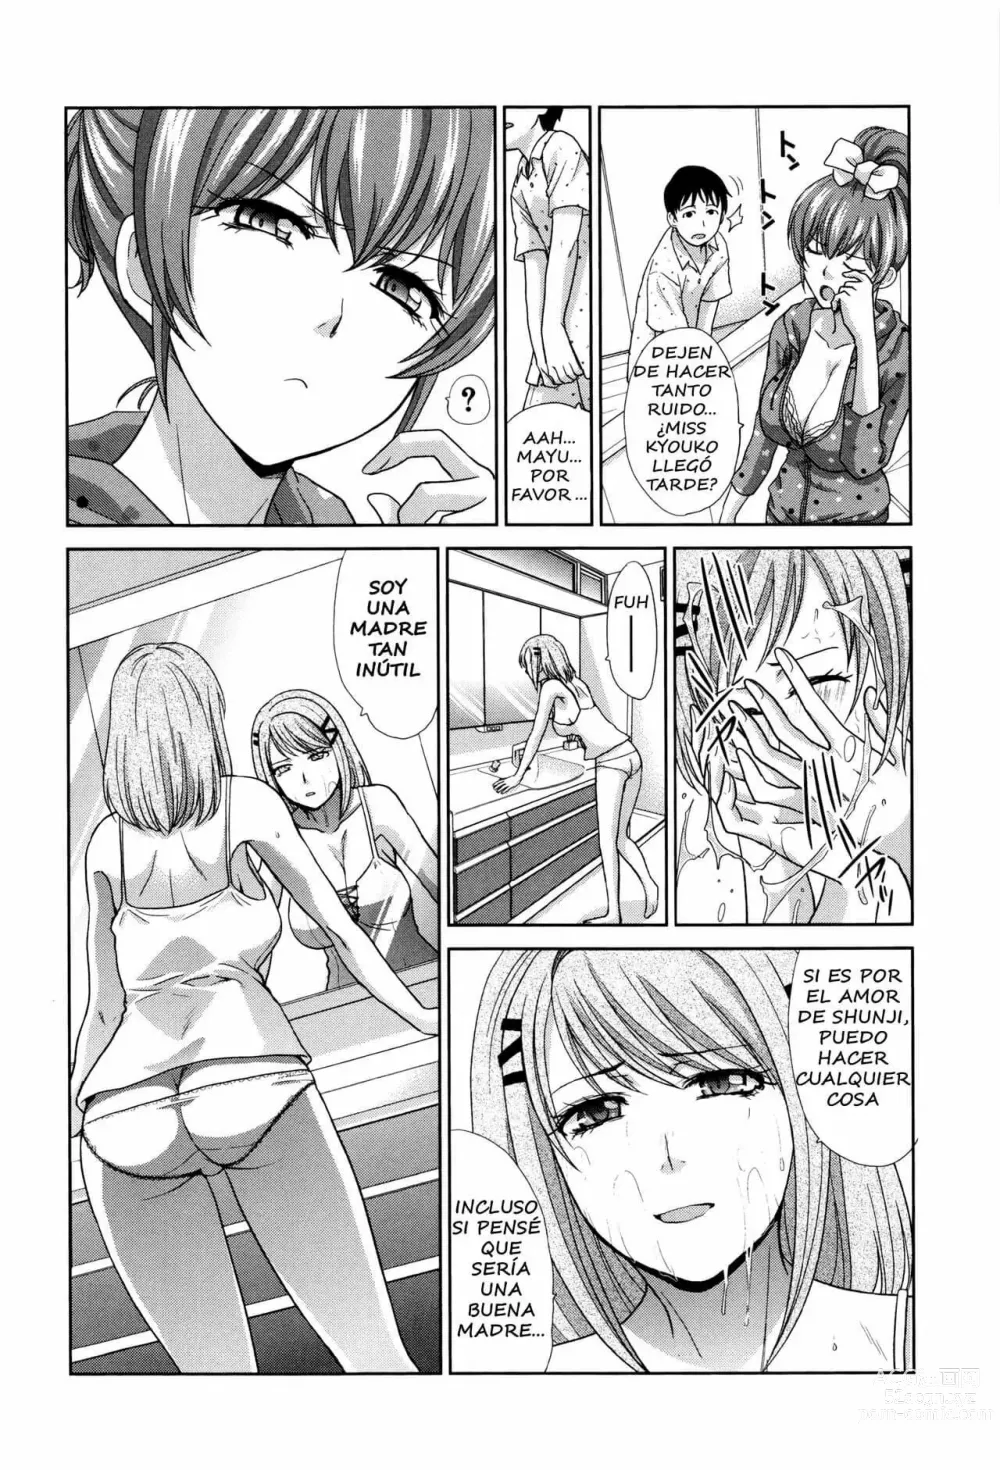 Page 156 of manga Dos Madres